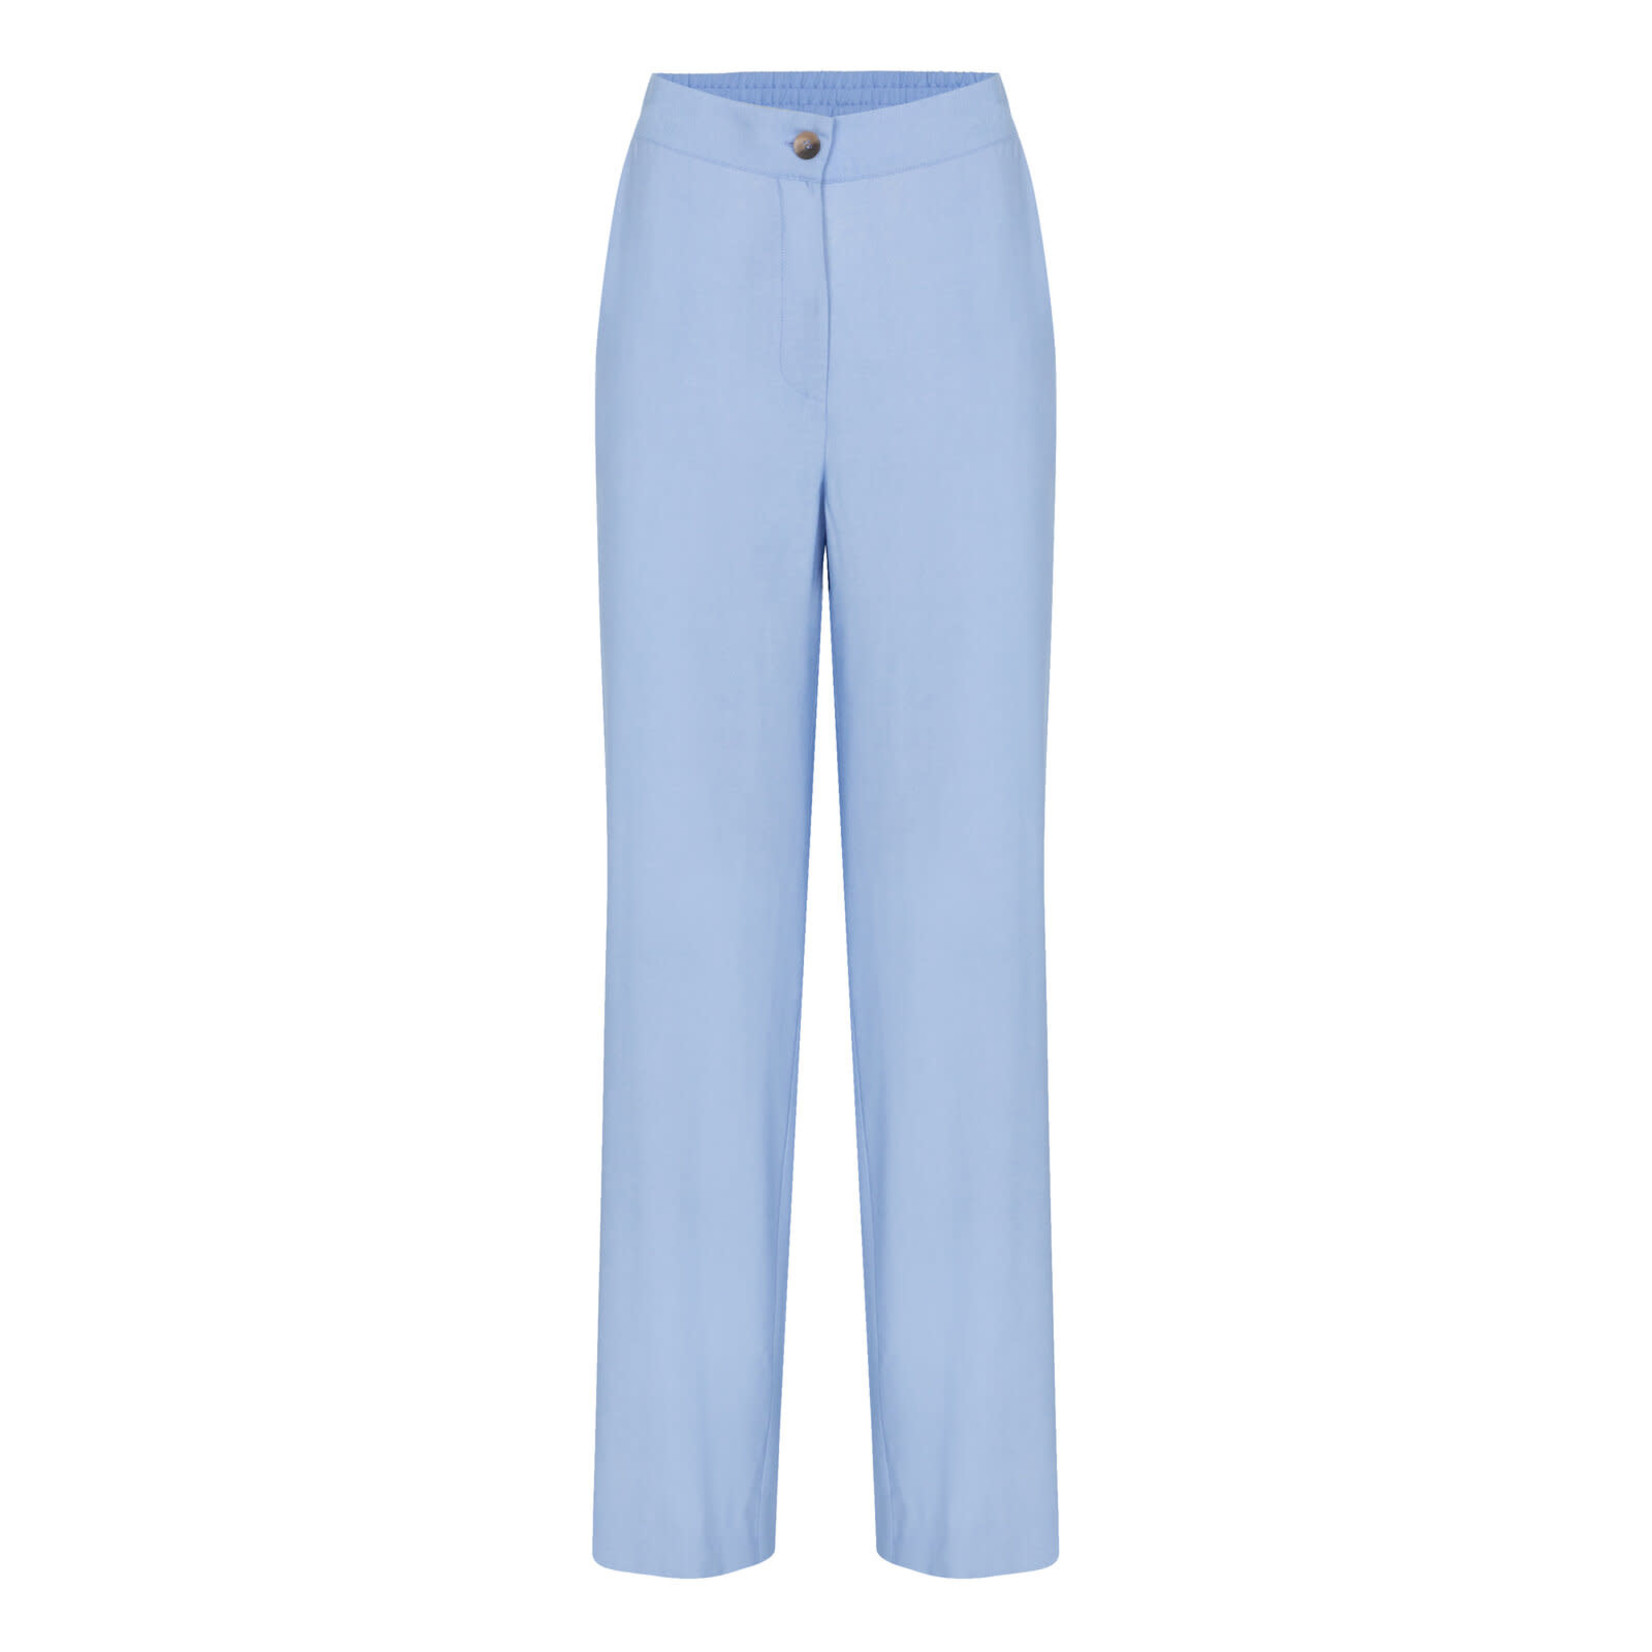 Terre Bleue -  Liliane broek - Verschillende kleuren verkrijgbaar